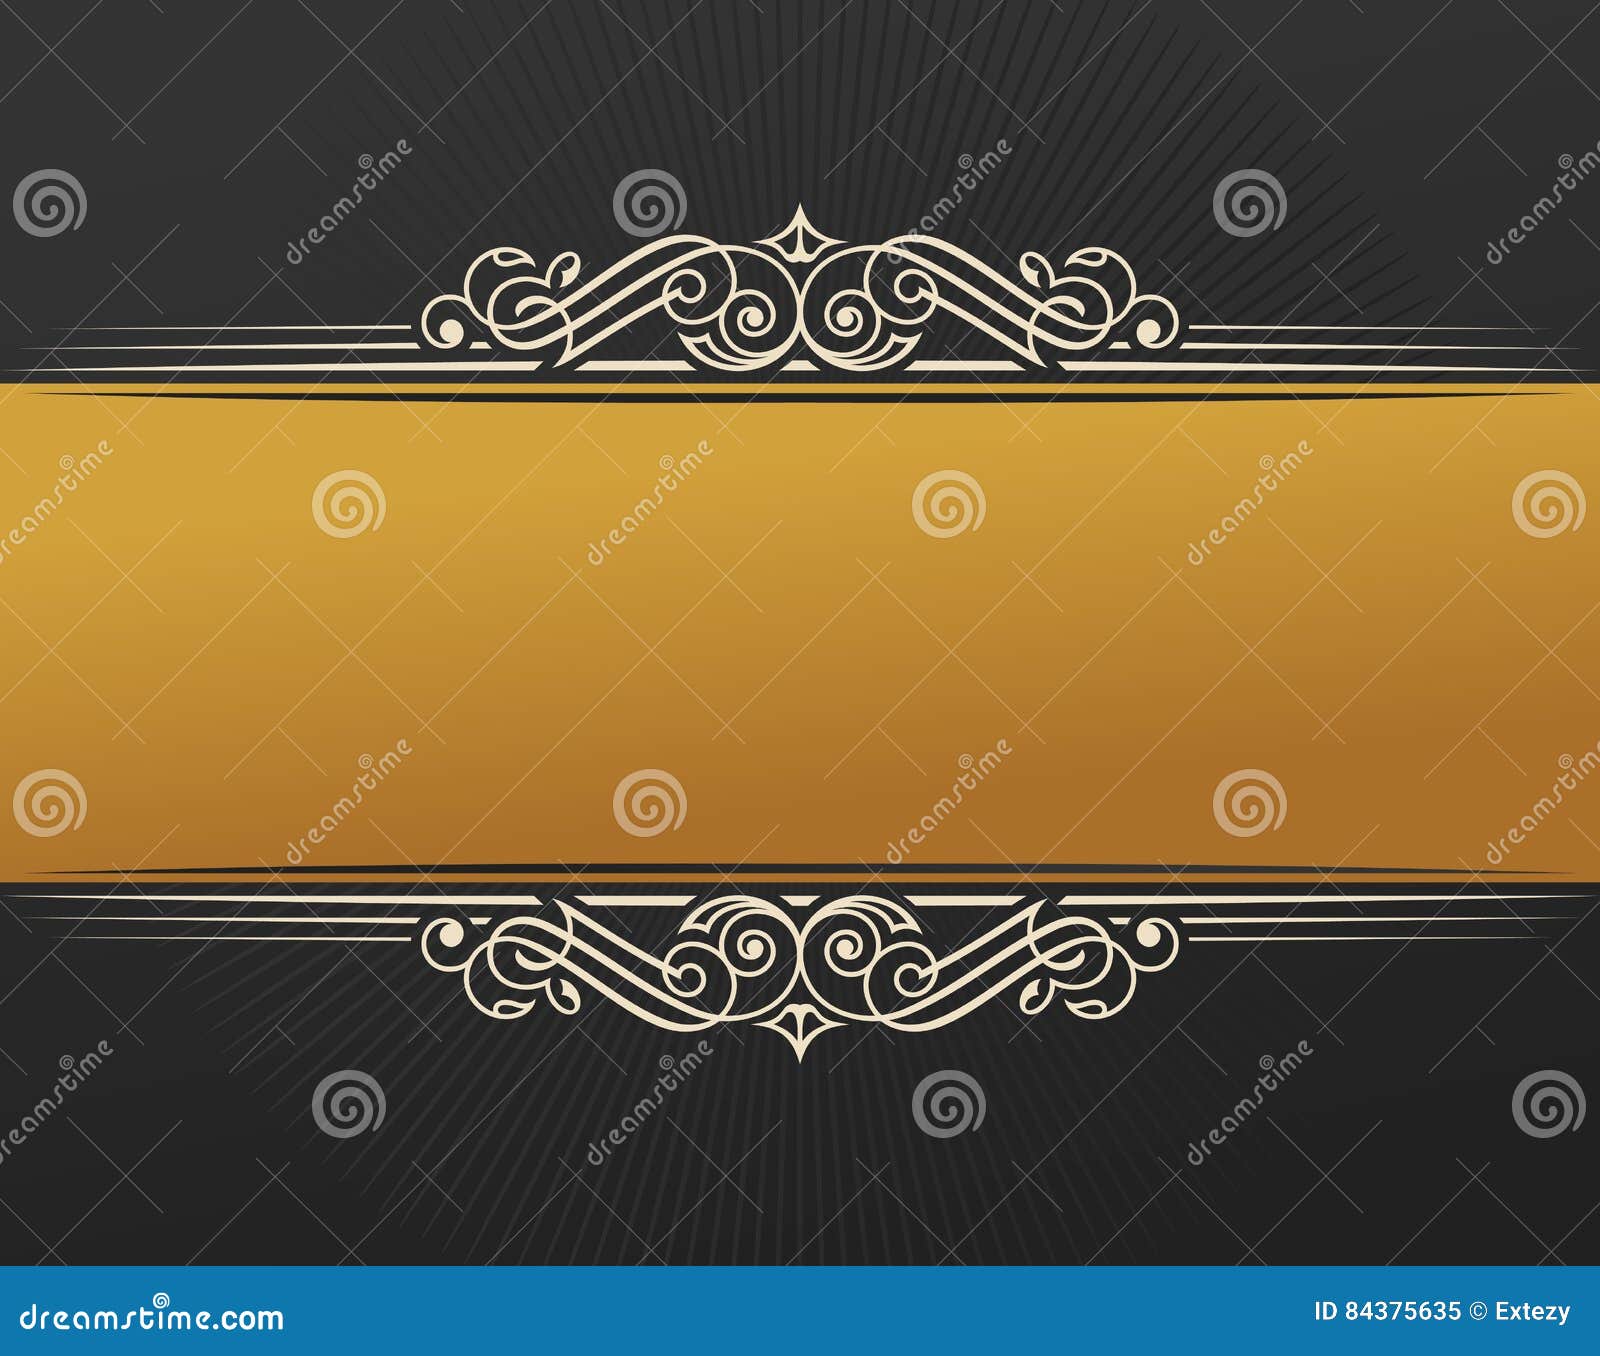 Progettazione etnica di islam dell'insegna Porta-etichette dell'annata dell'invito dell'oro Emblema in bianco dell'autoadesivo Illustrazione nera orientale per testo Scenetta di lusso per un regalo, carta, invito, logo del modello